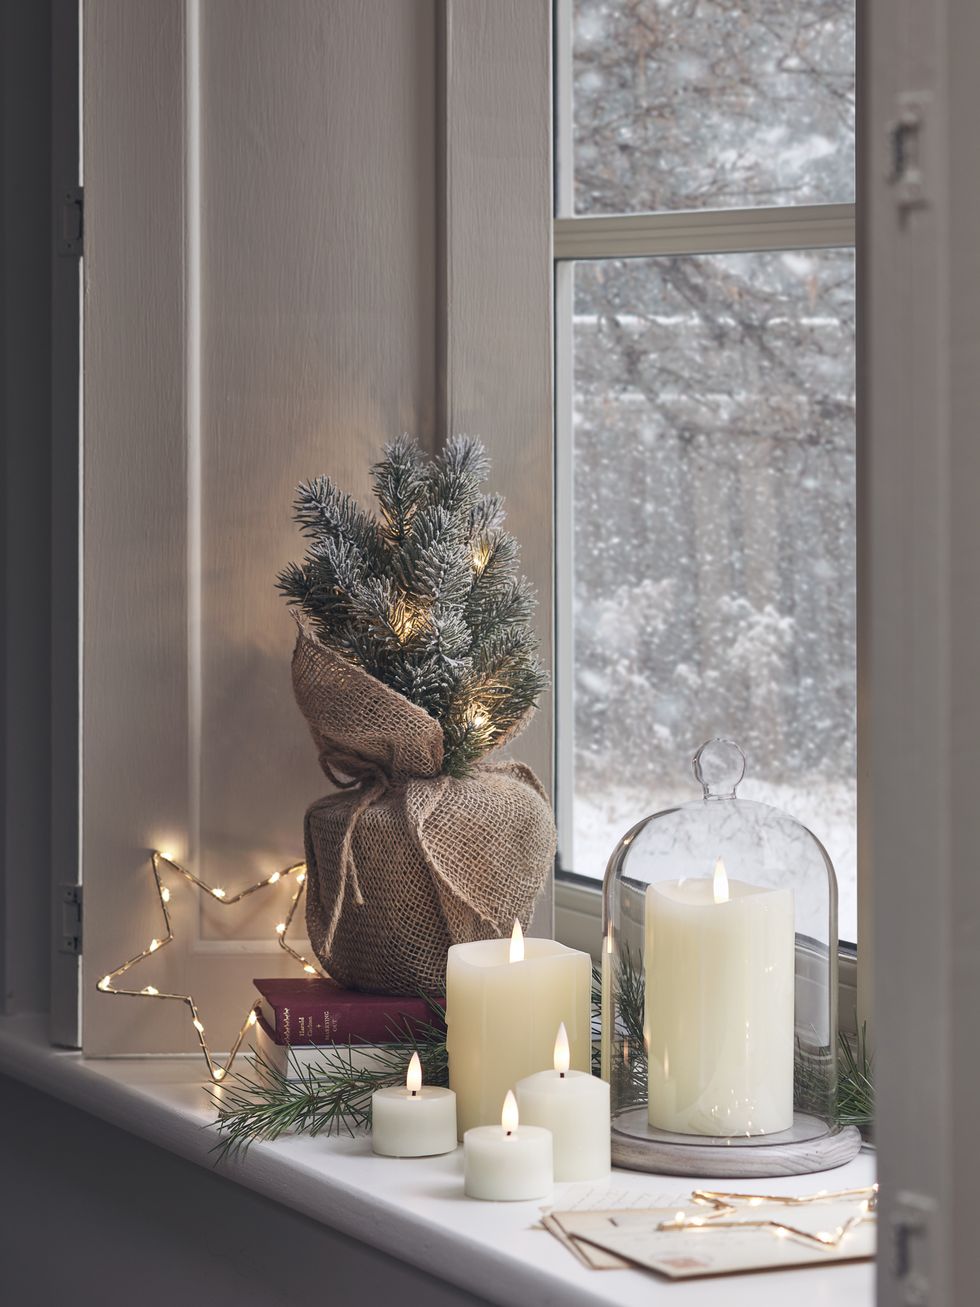 Christmas Window Painting - Retail Displays Shop Snow Windows